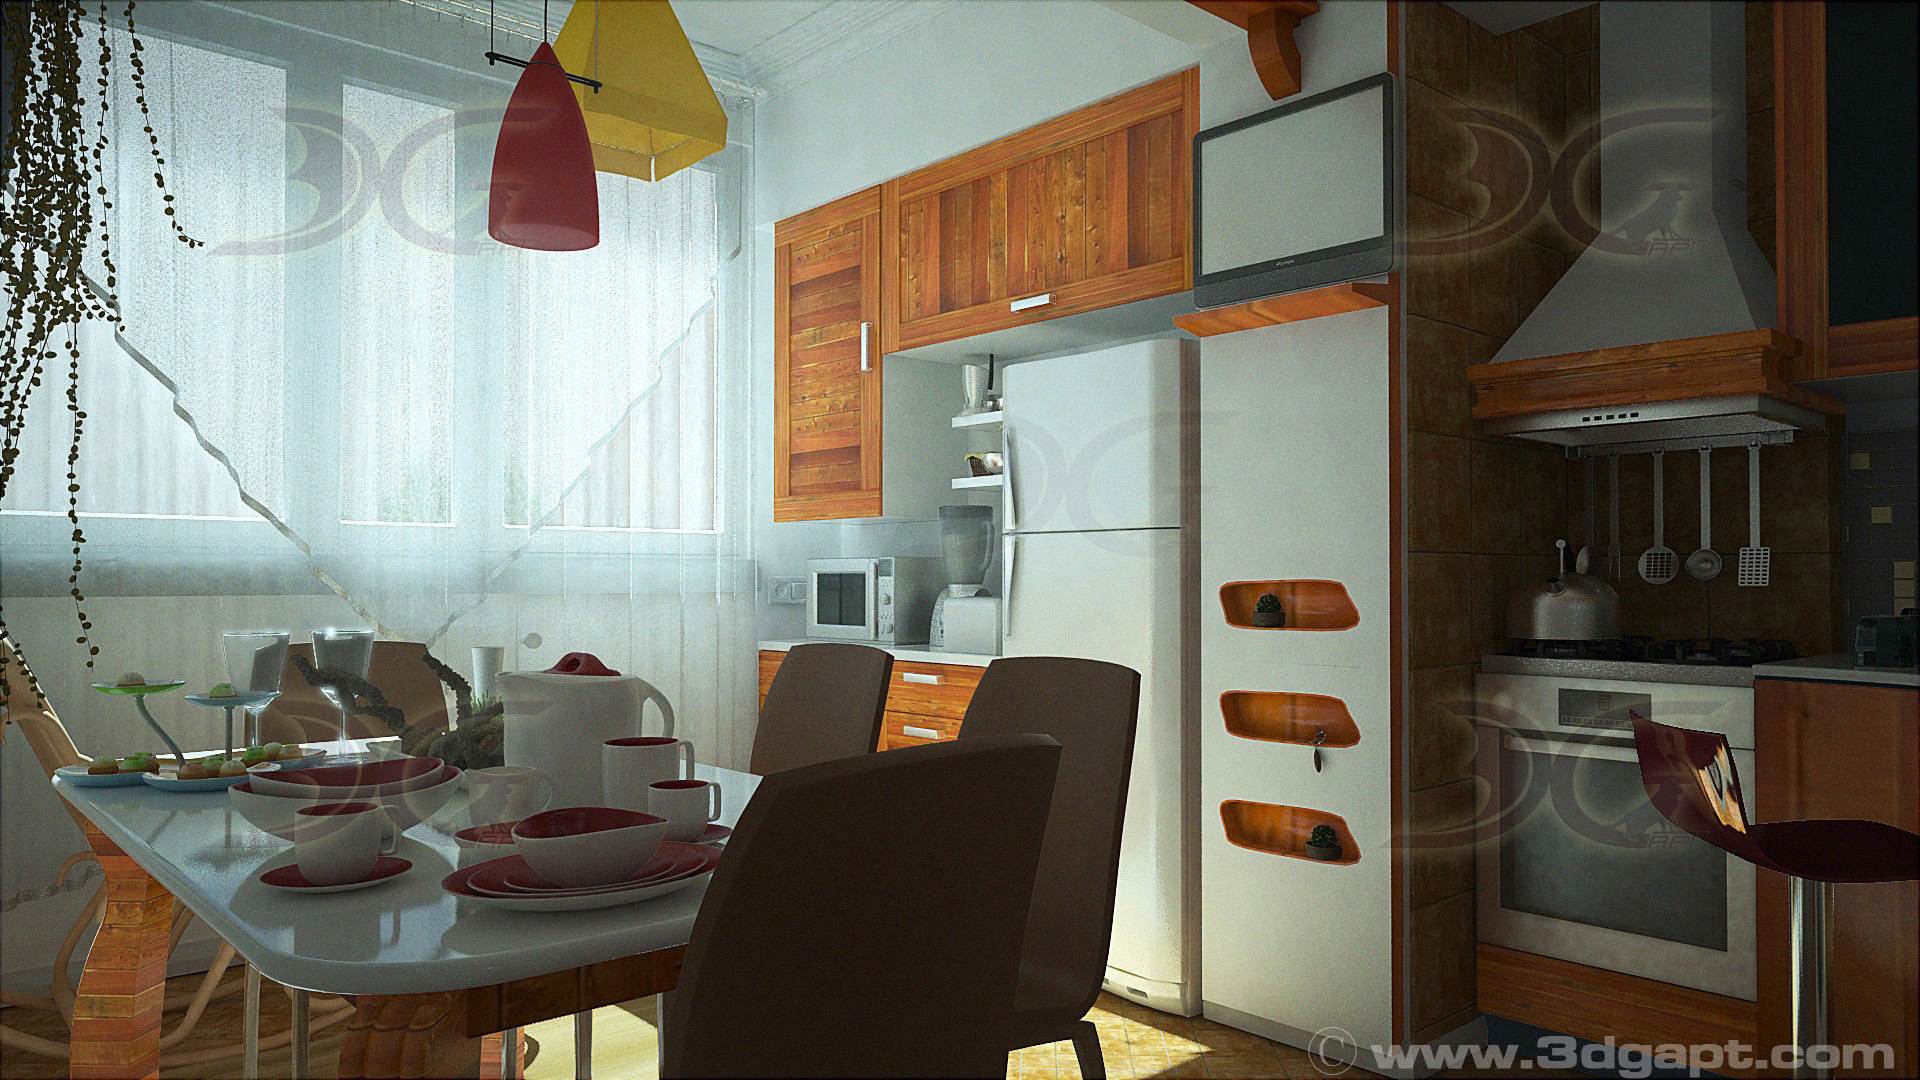 Architecture Interior Kitchen 3versions 20